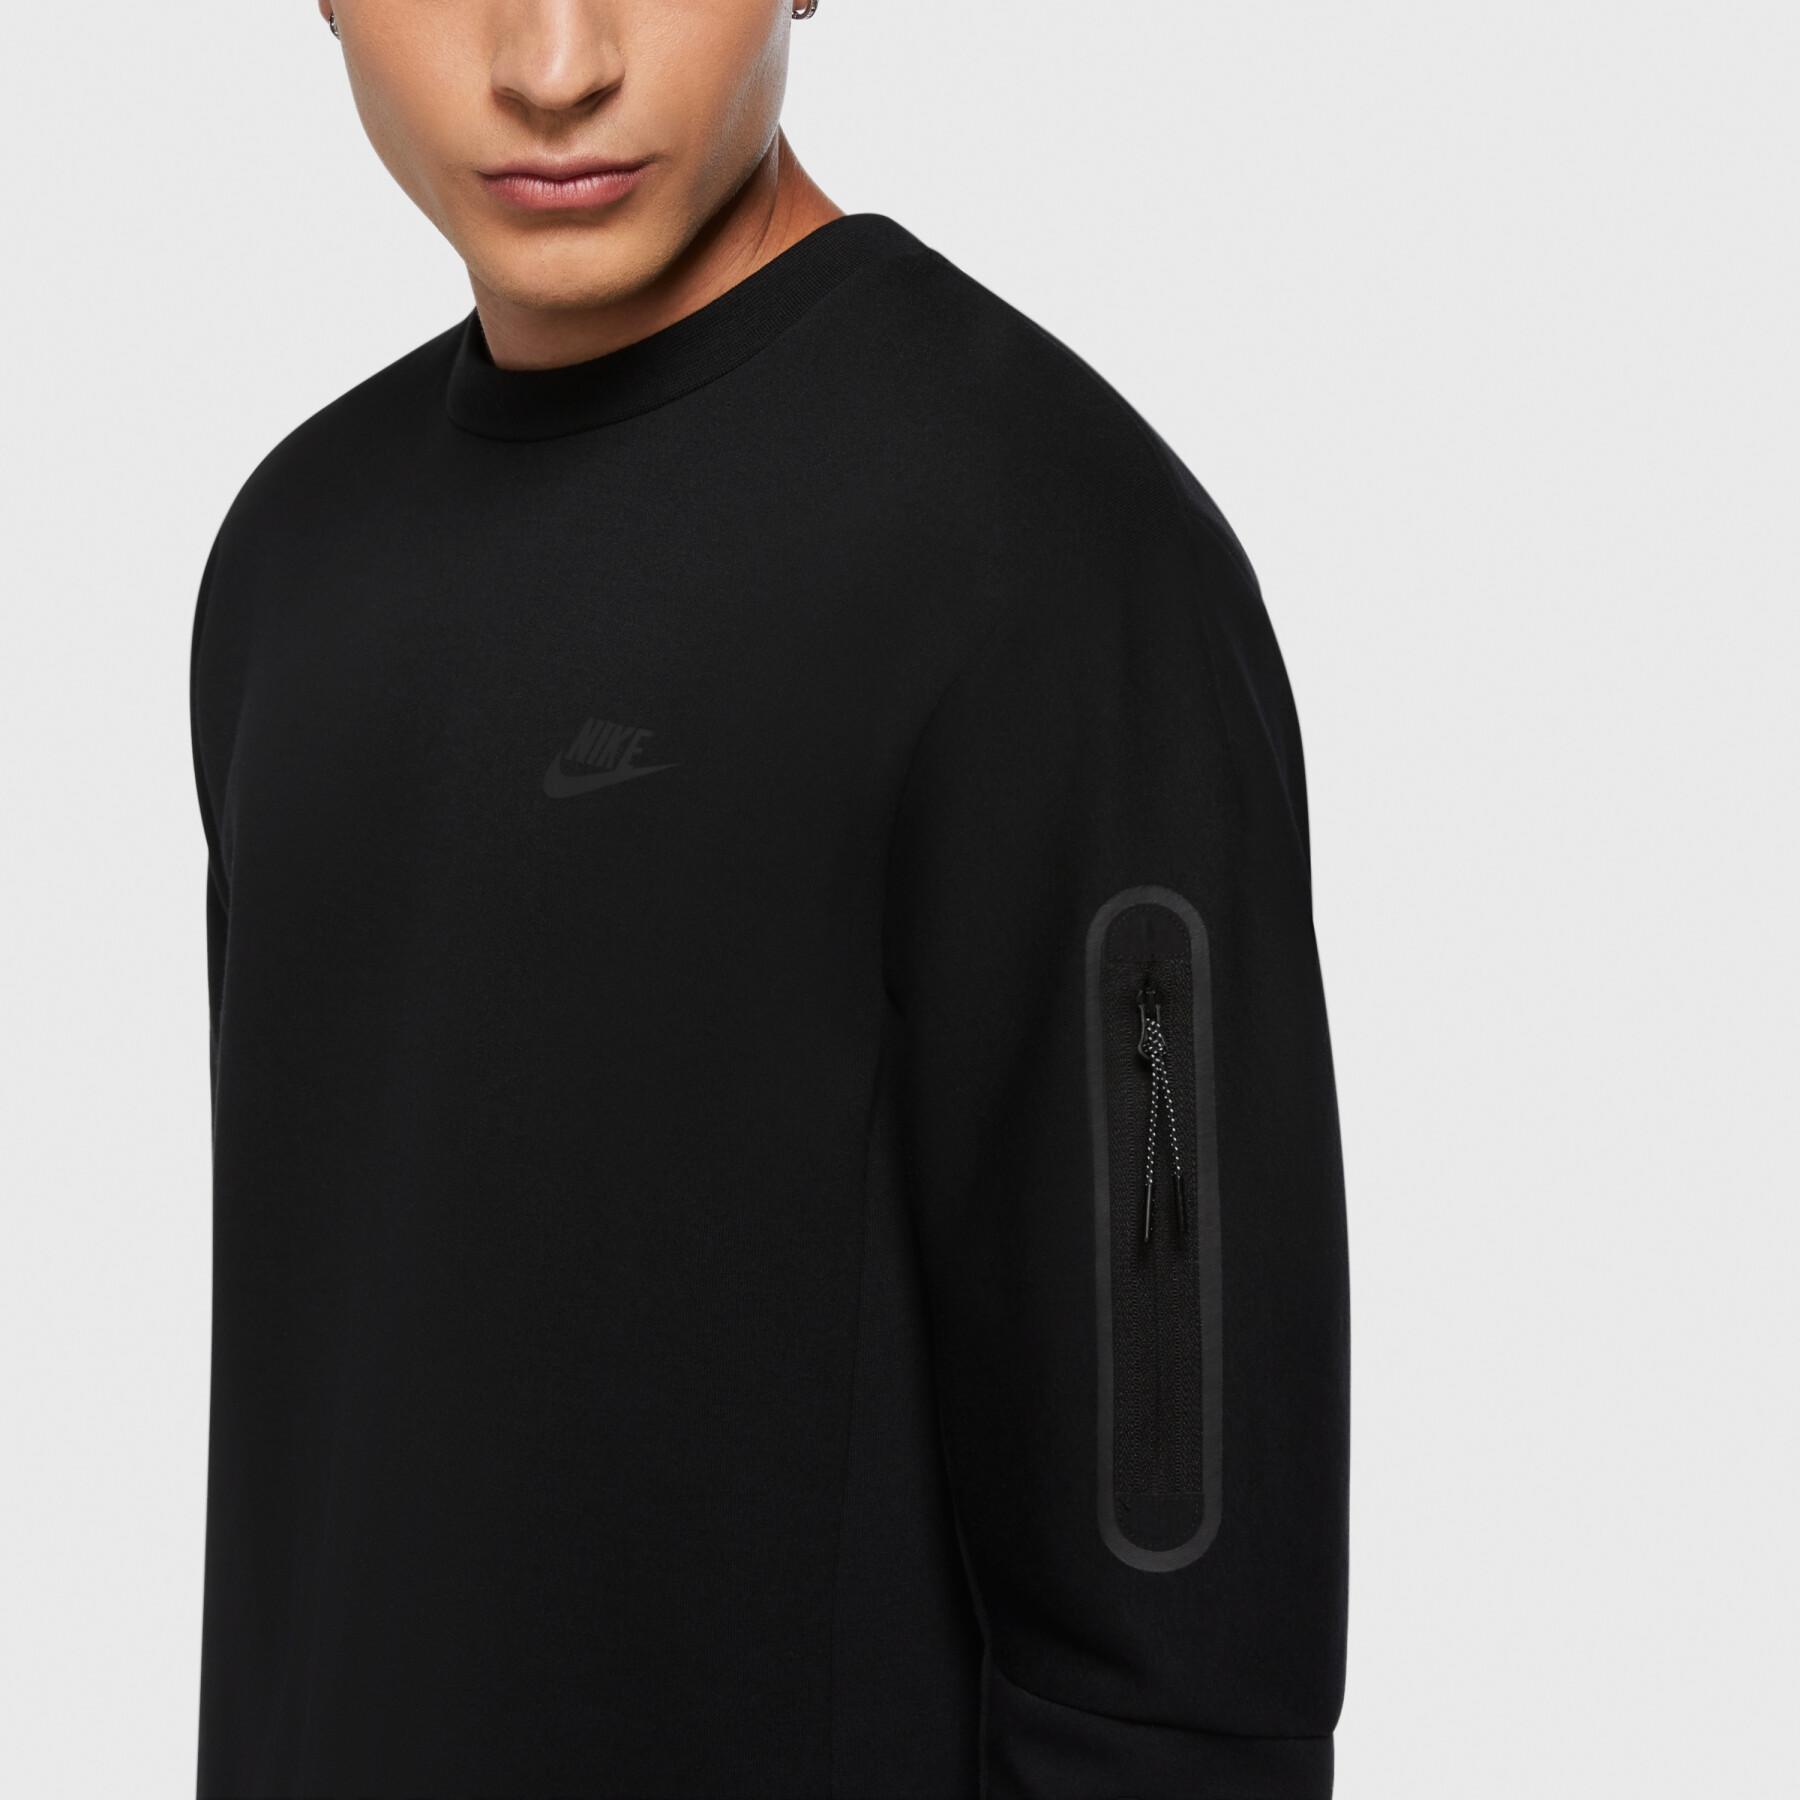 Felpa Nike Sportswear Tech Fleece